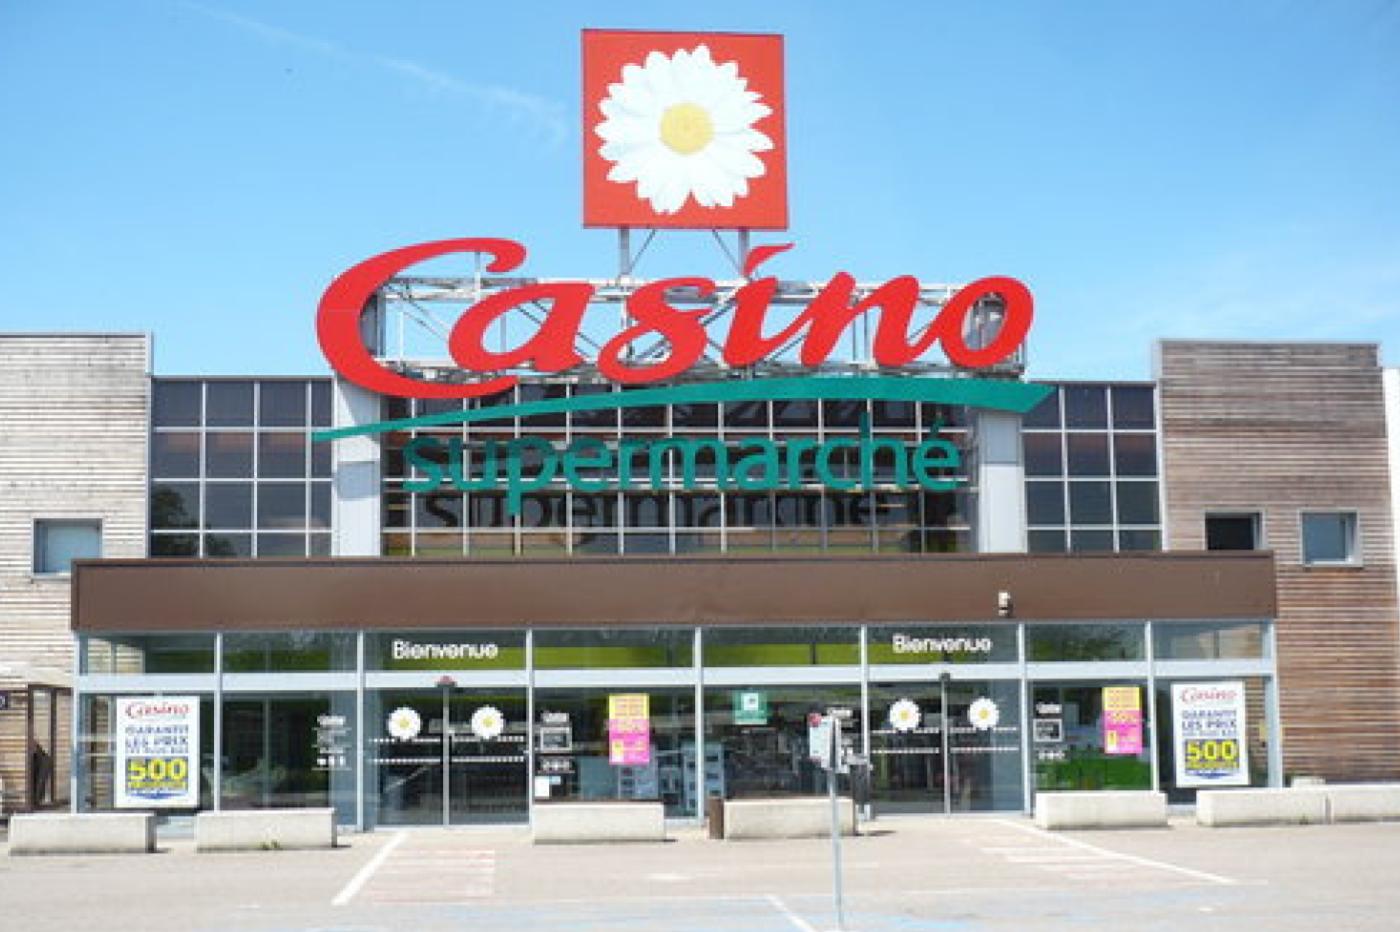 Casino Supermarché